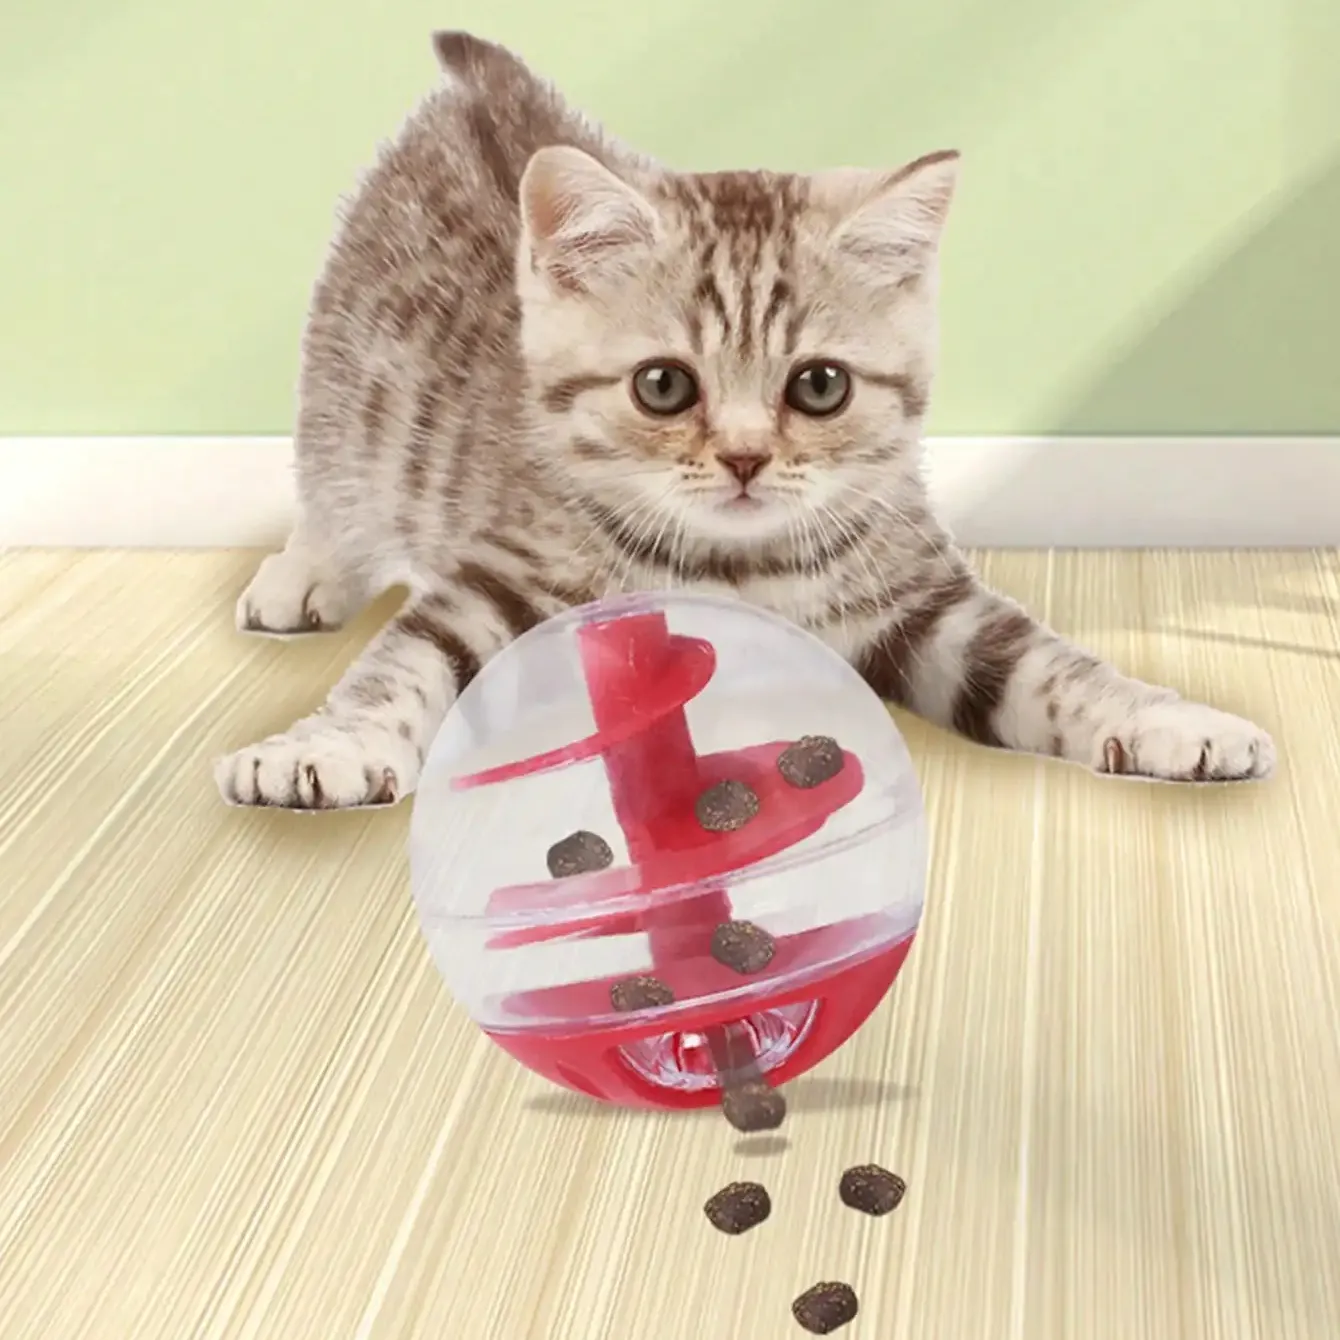 Red Pet chậm trung chuyển thực phẩm Quả Bóng đồ chơi an toàn cho ăn rò rỉ thực phẩm Tumbler chơI mèo đồ chơi bóng